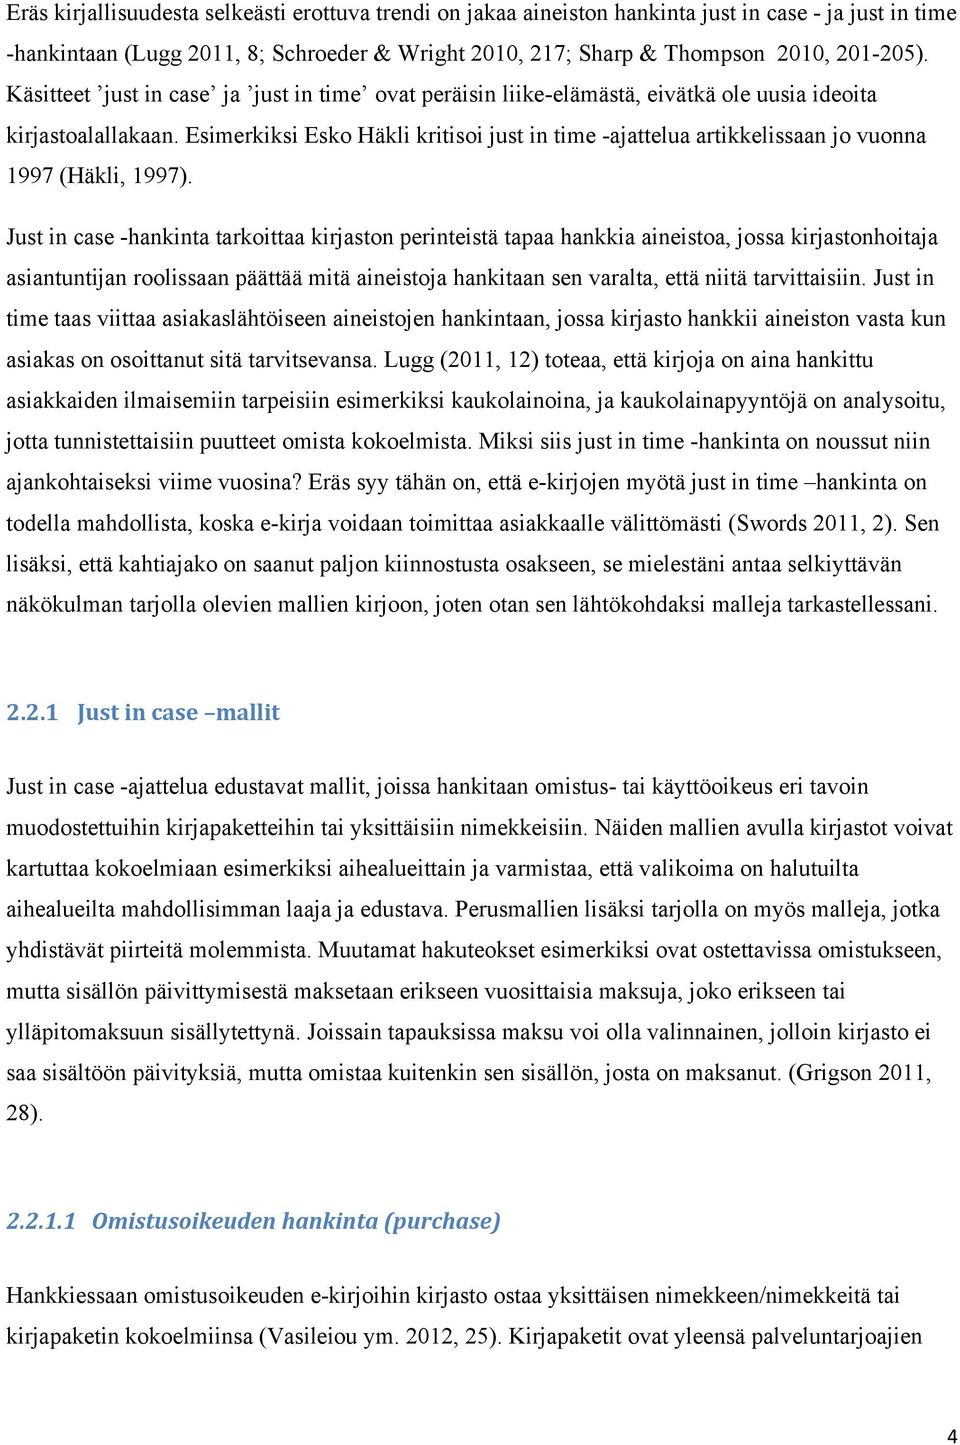 Esimerkiksi Esko Häkli kritisoi just in time -ajattelua artikkelissaan jo vuonna 1997 (Häkli, 1997).